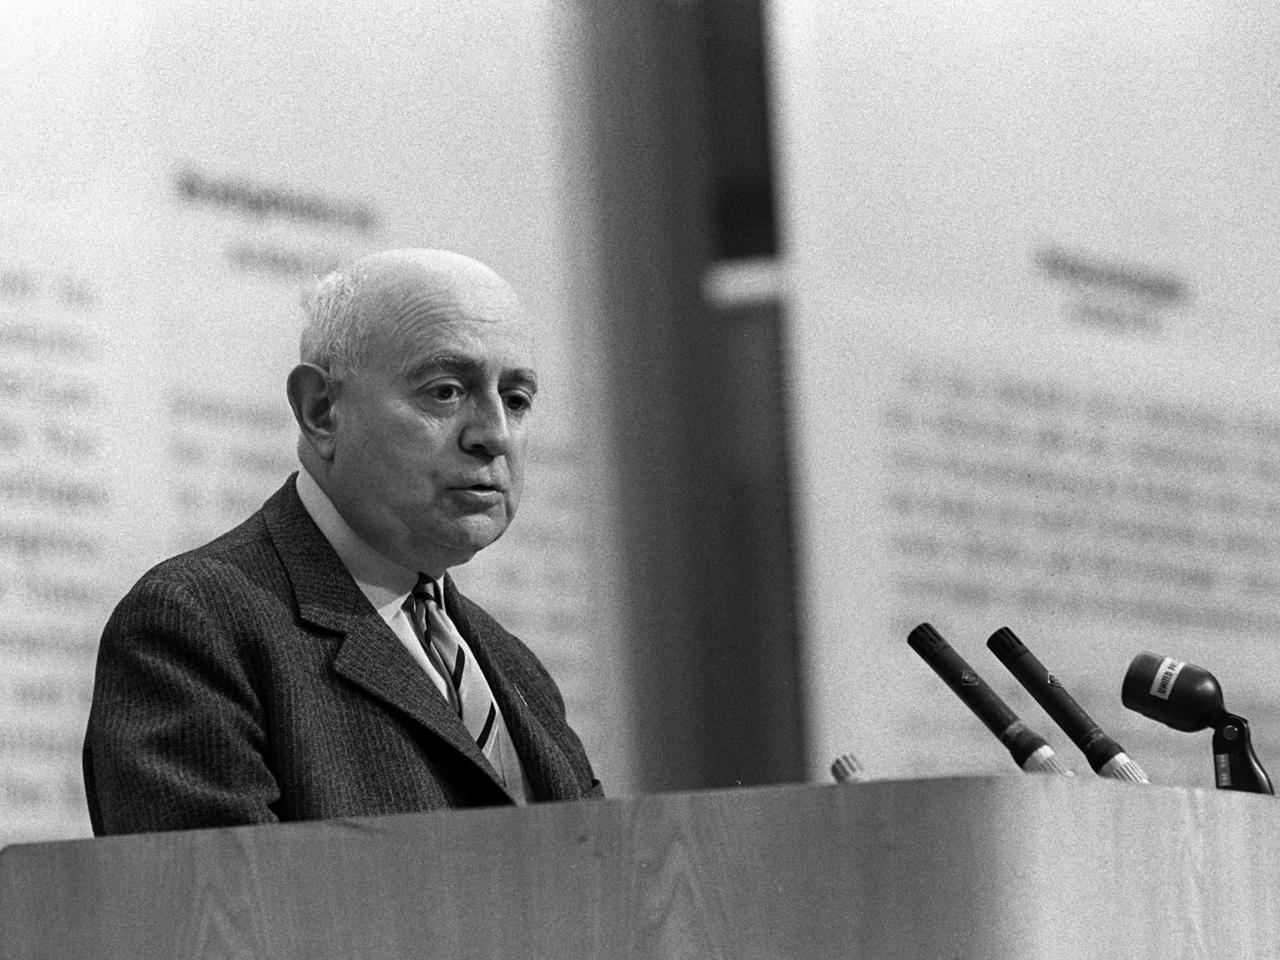 Der Soziologie-Professor Theodor Adorno am 28.05.1968 während eines Vortrags im Großen Sendesaal des Hessischen Rundfunks in Frankfurt am Main.